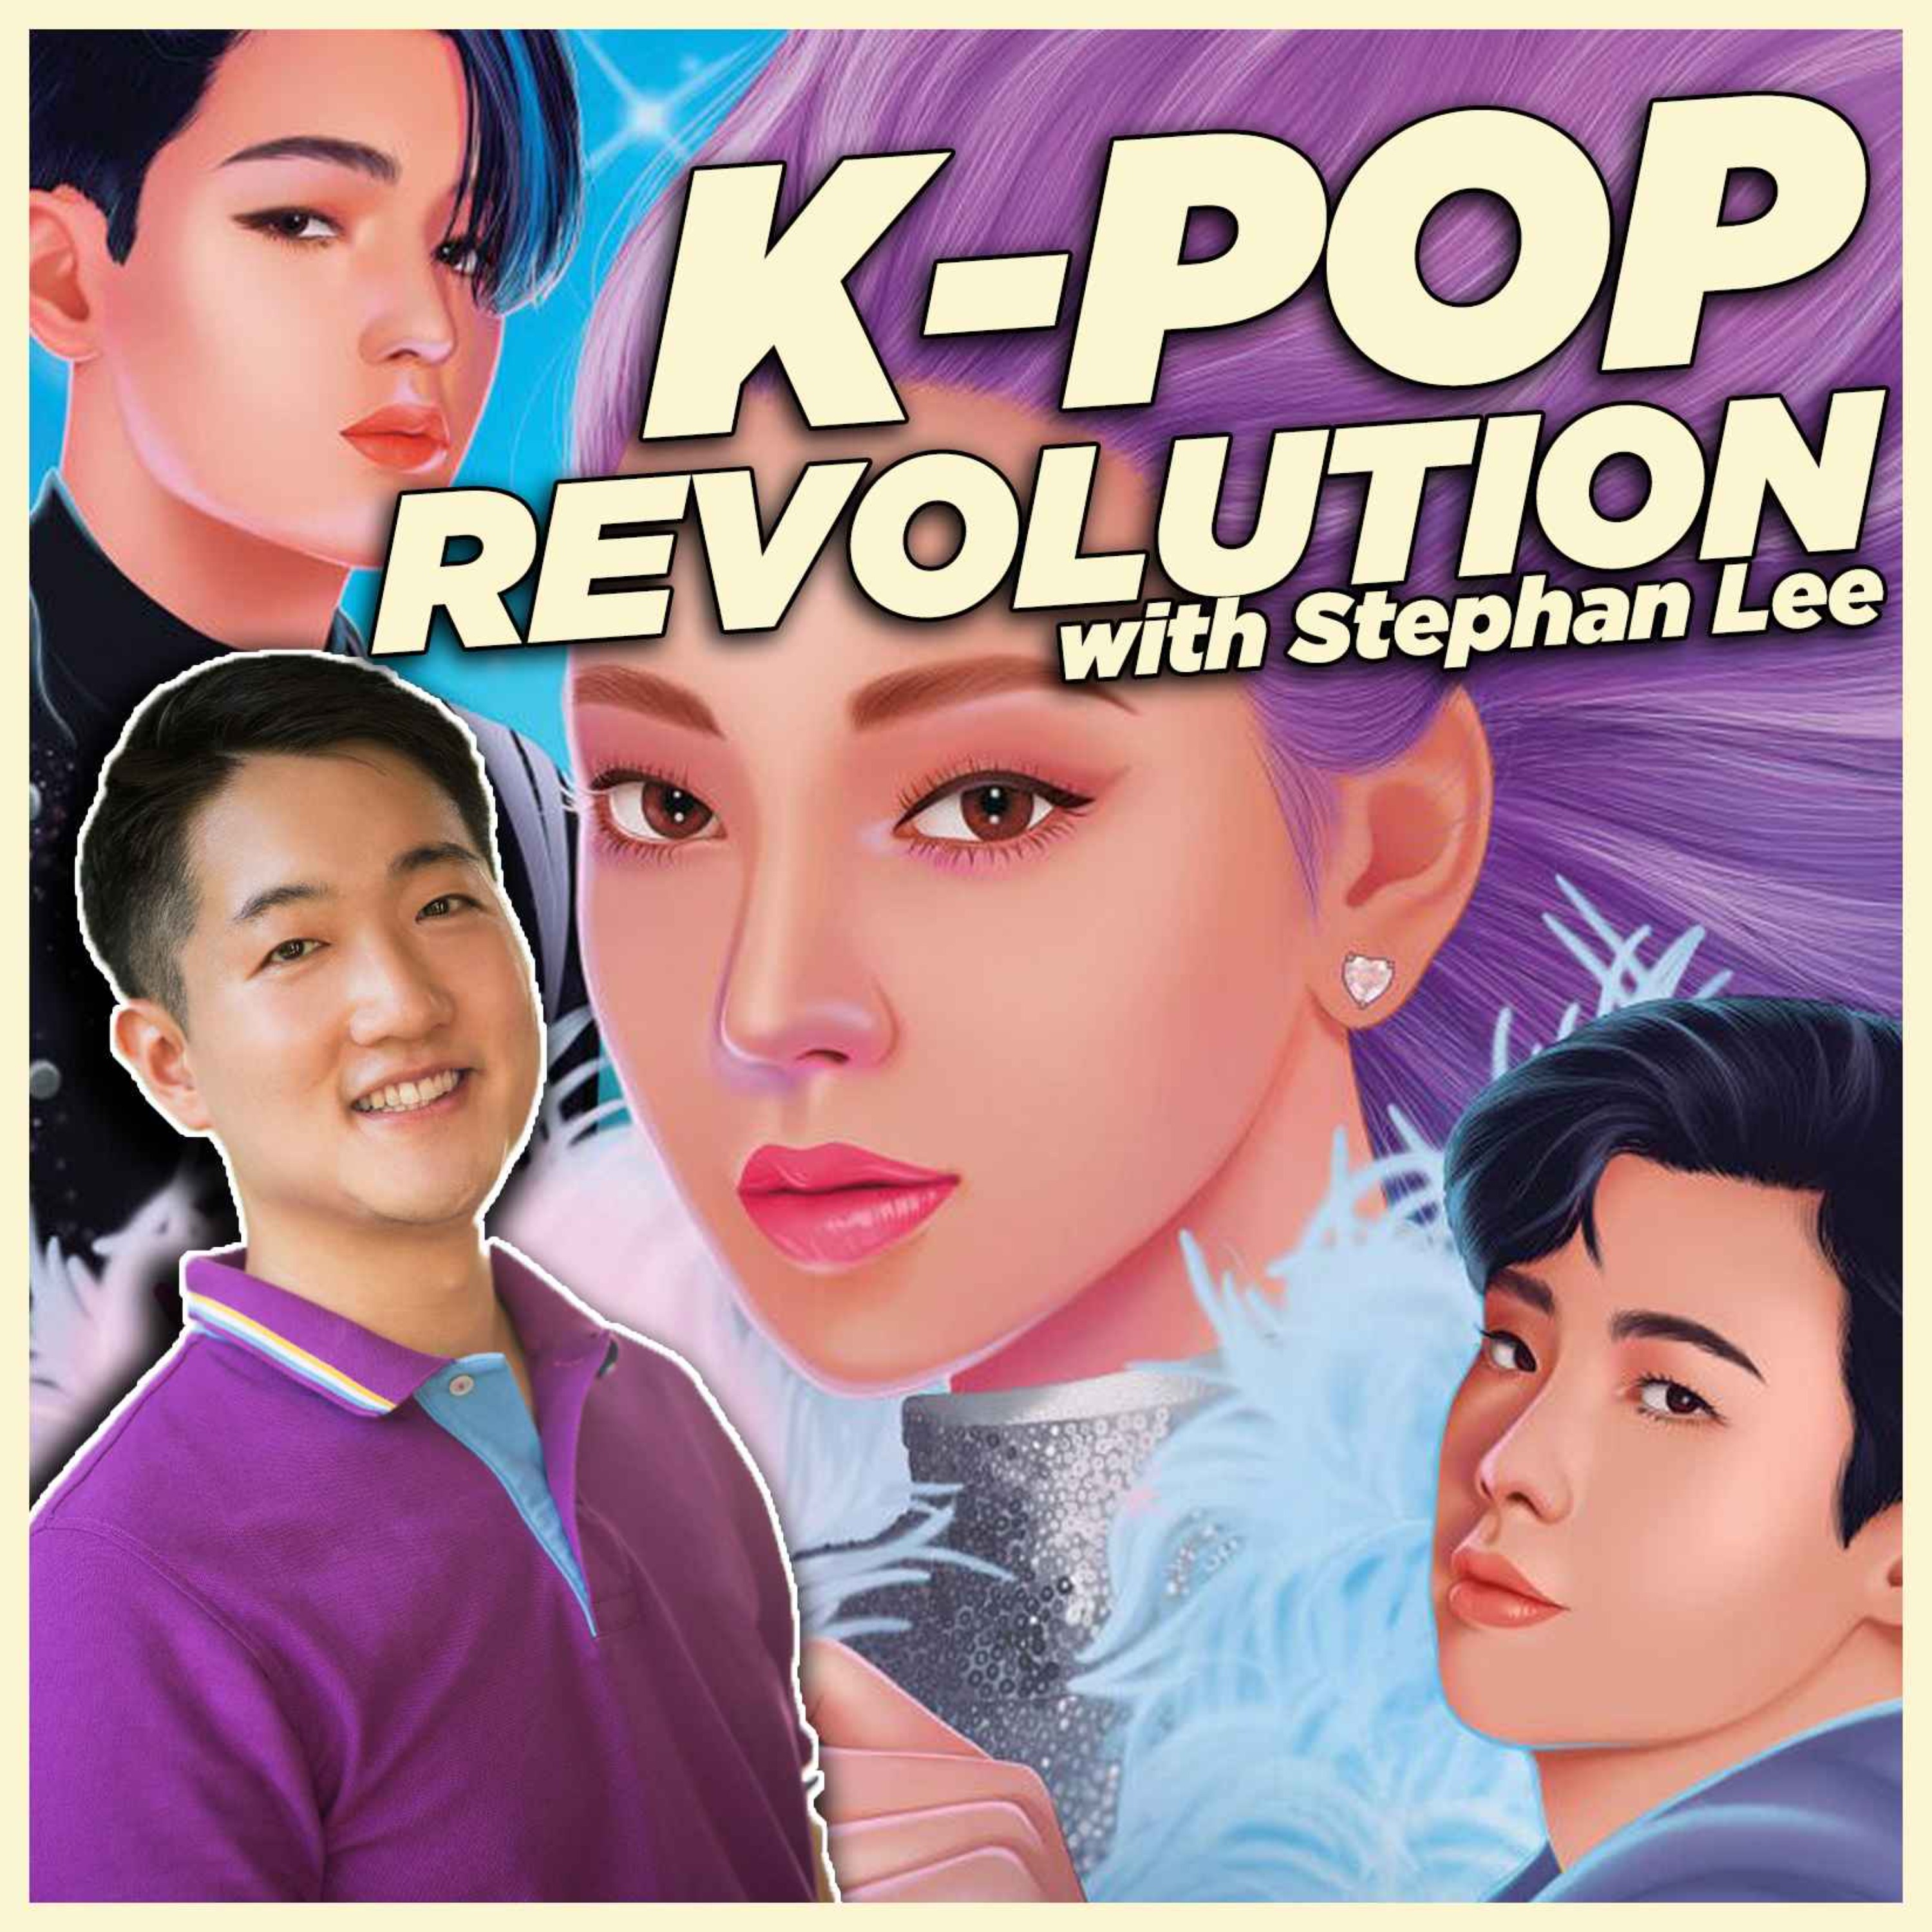 ”K-Pop Revolution” with Stephan Lee